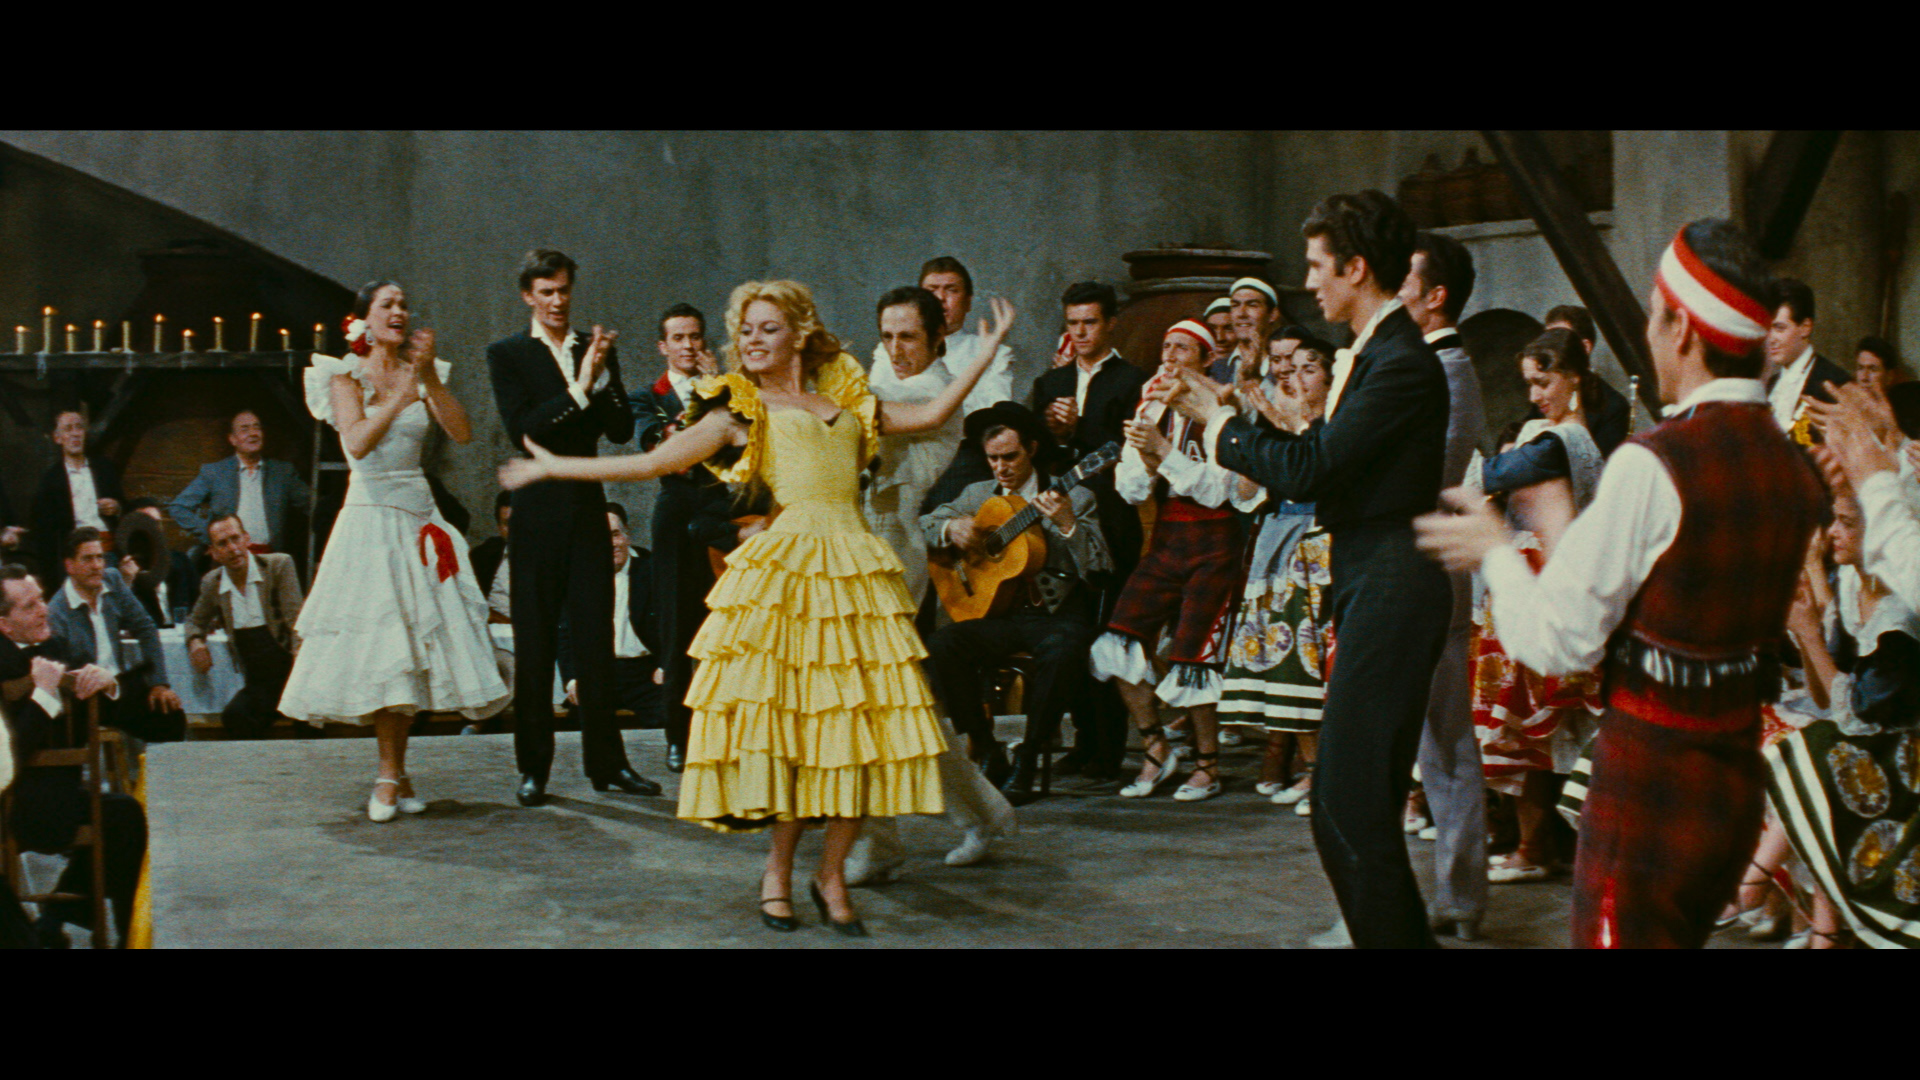 LA FEMME ET LE PANTIN - DUVIVIER (1959) - DVD + BRD